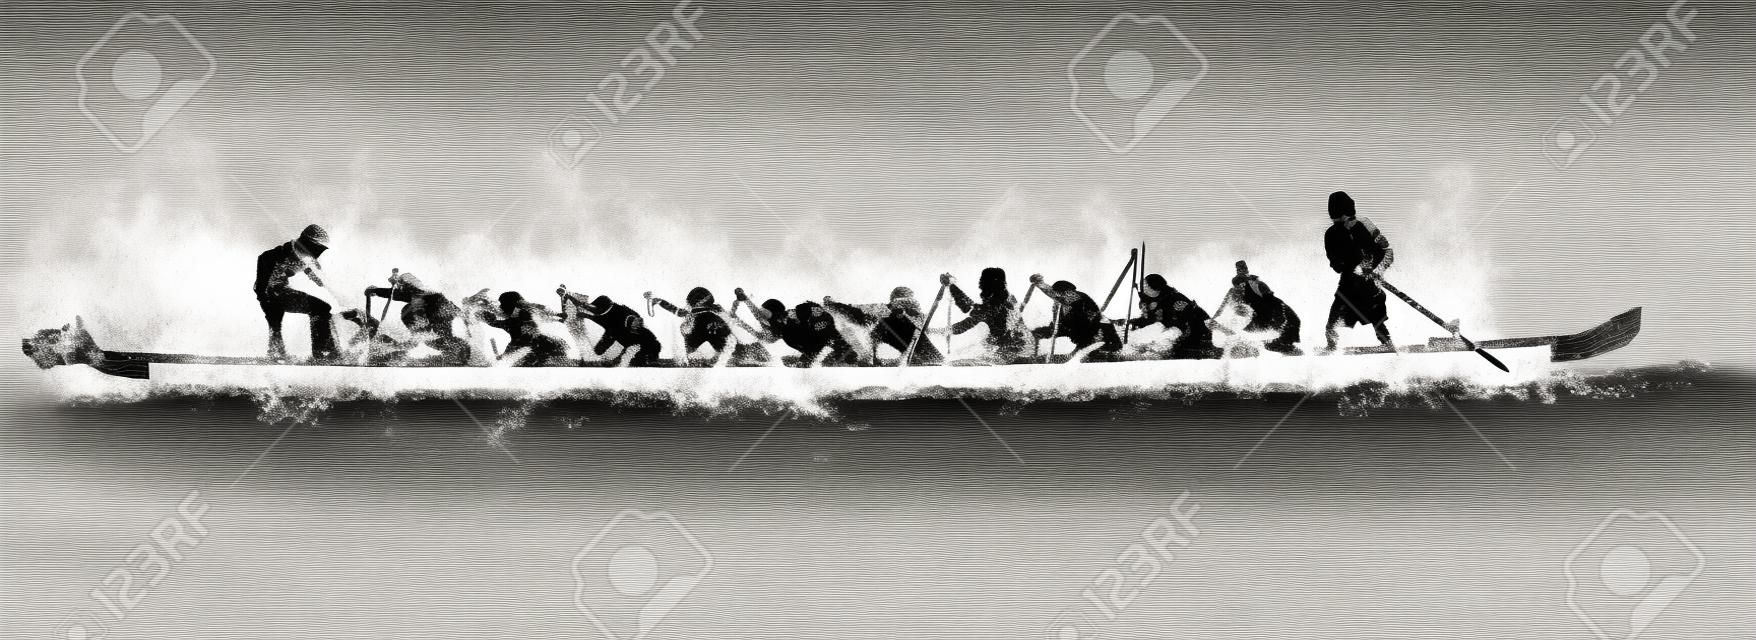 Ilustracja z łodzi smoka w akcji, czarny i biały na białym tle